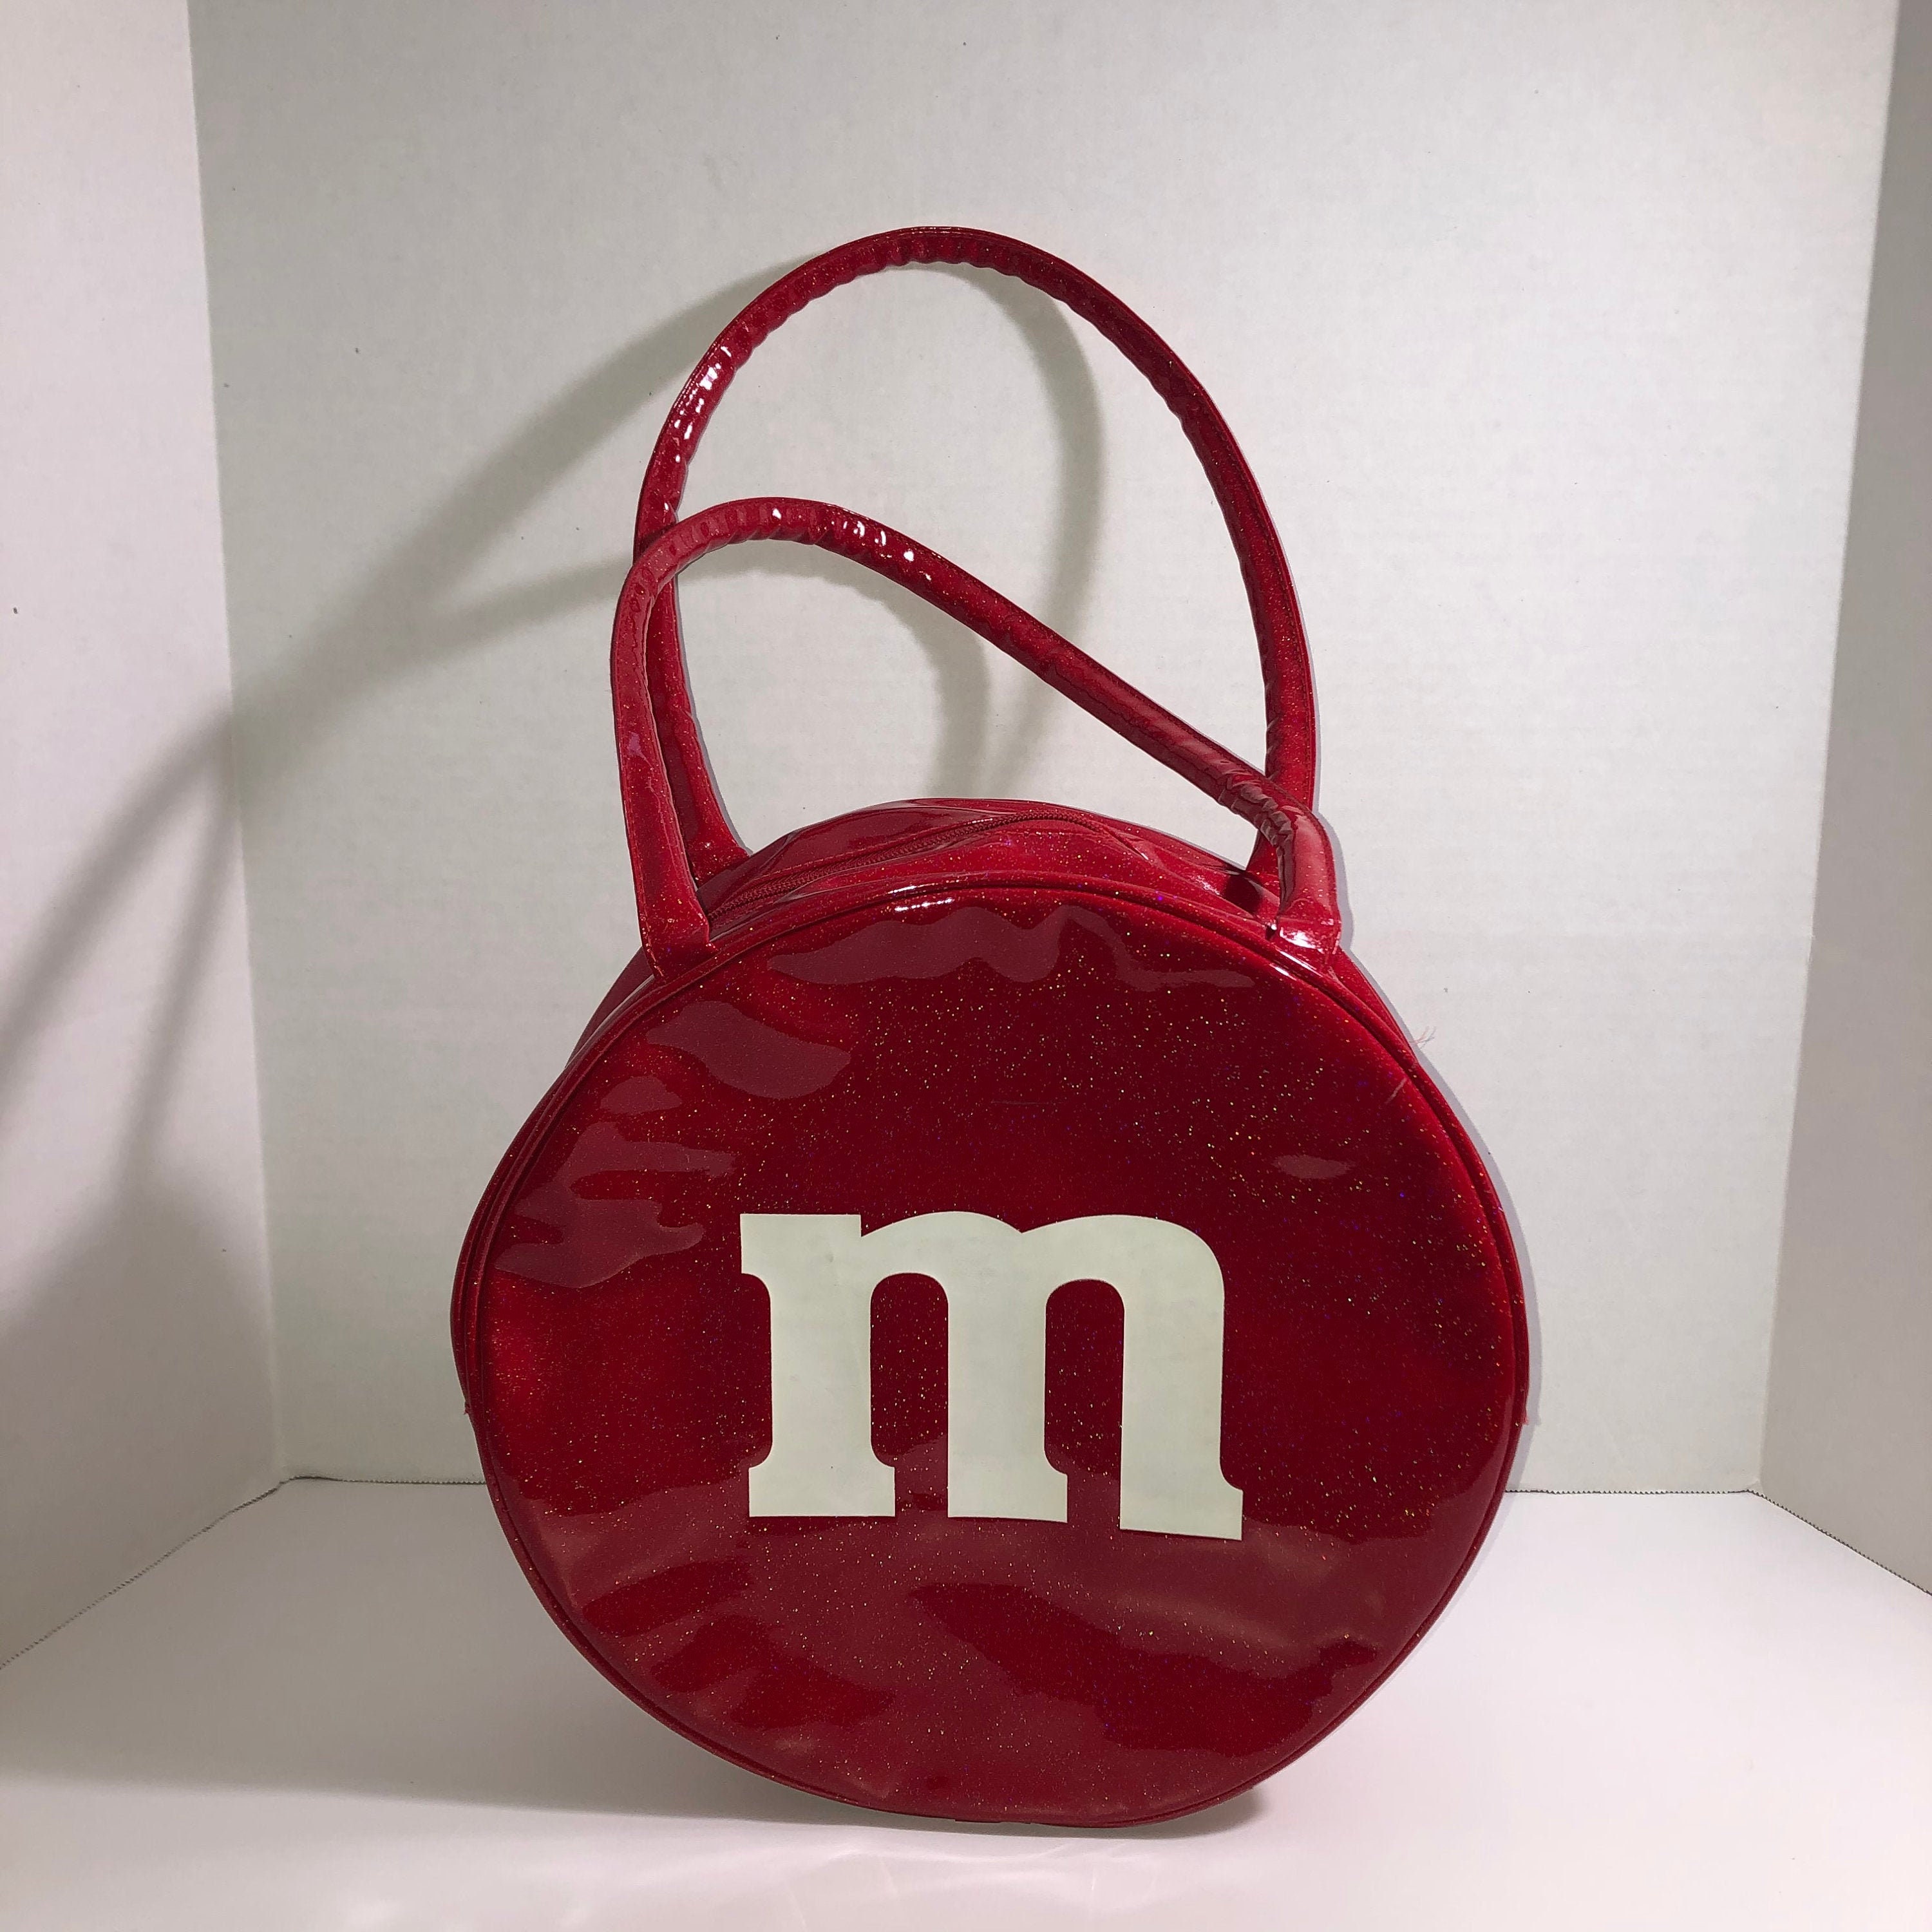 m&ms purse